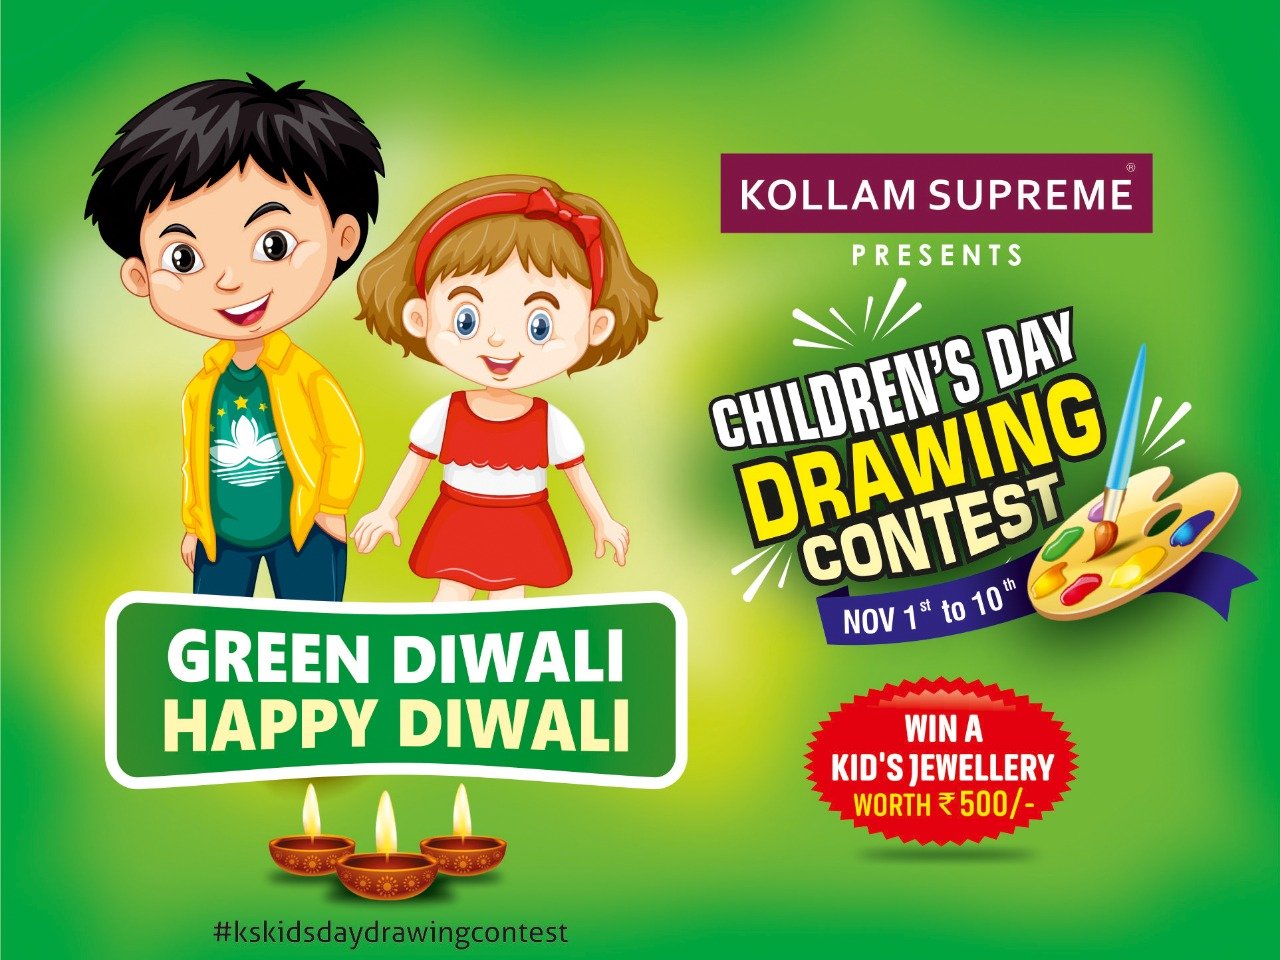 Kollam Supreme Children's Day Contest